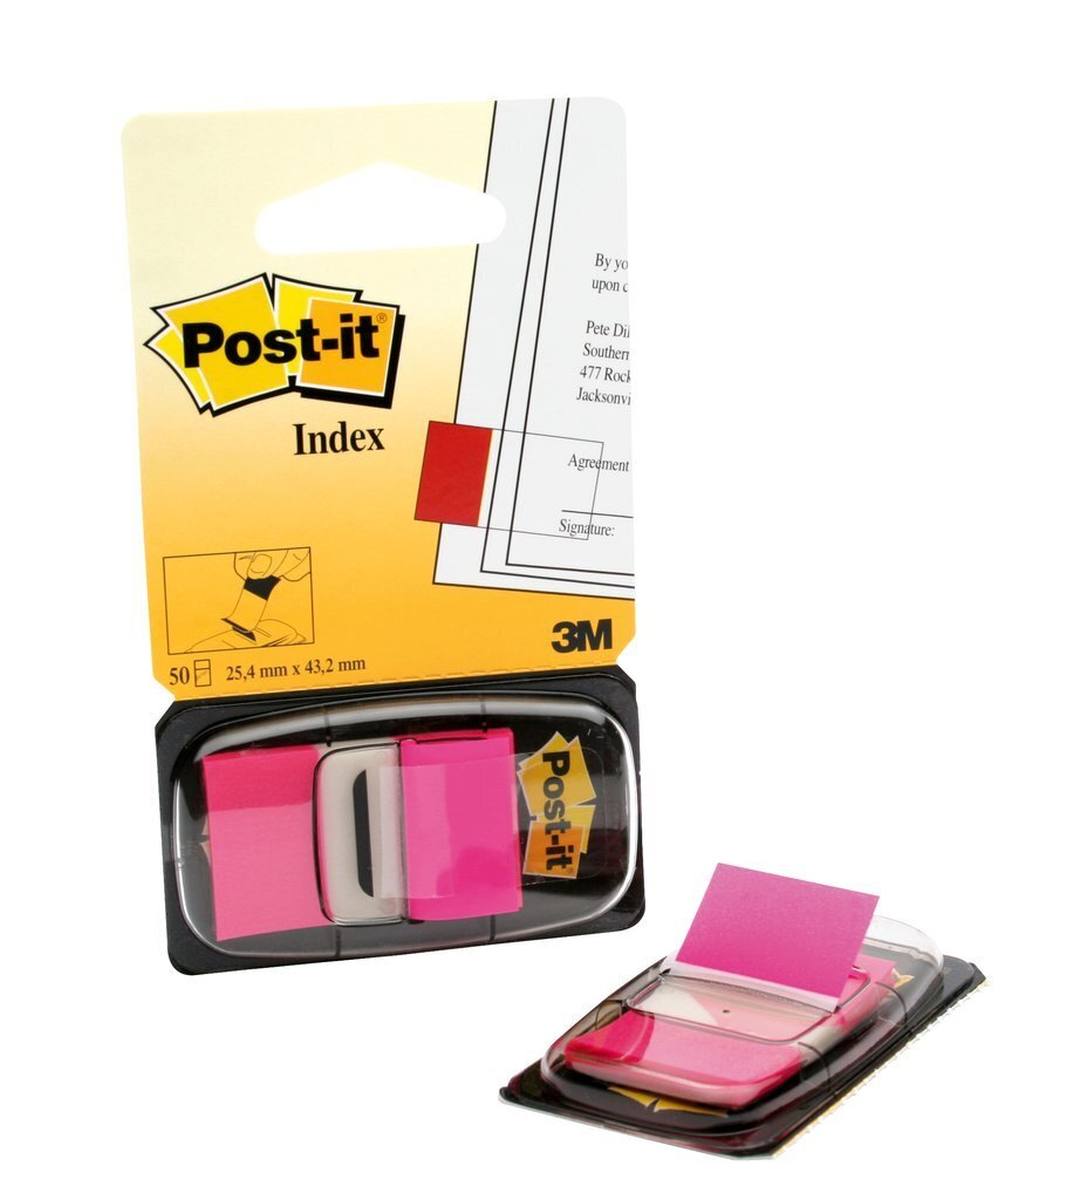 3M Post-it Index I680-21, 25,4 mm x 43,2 mm, roze, 1 x 50 plakstrips in dispenser